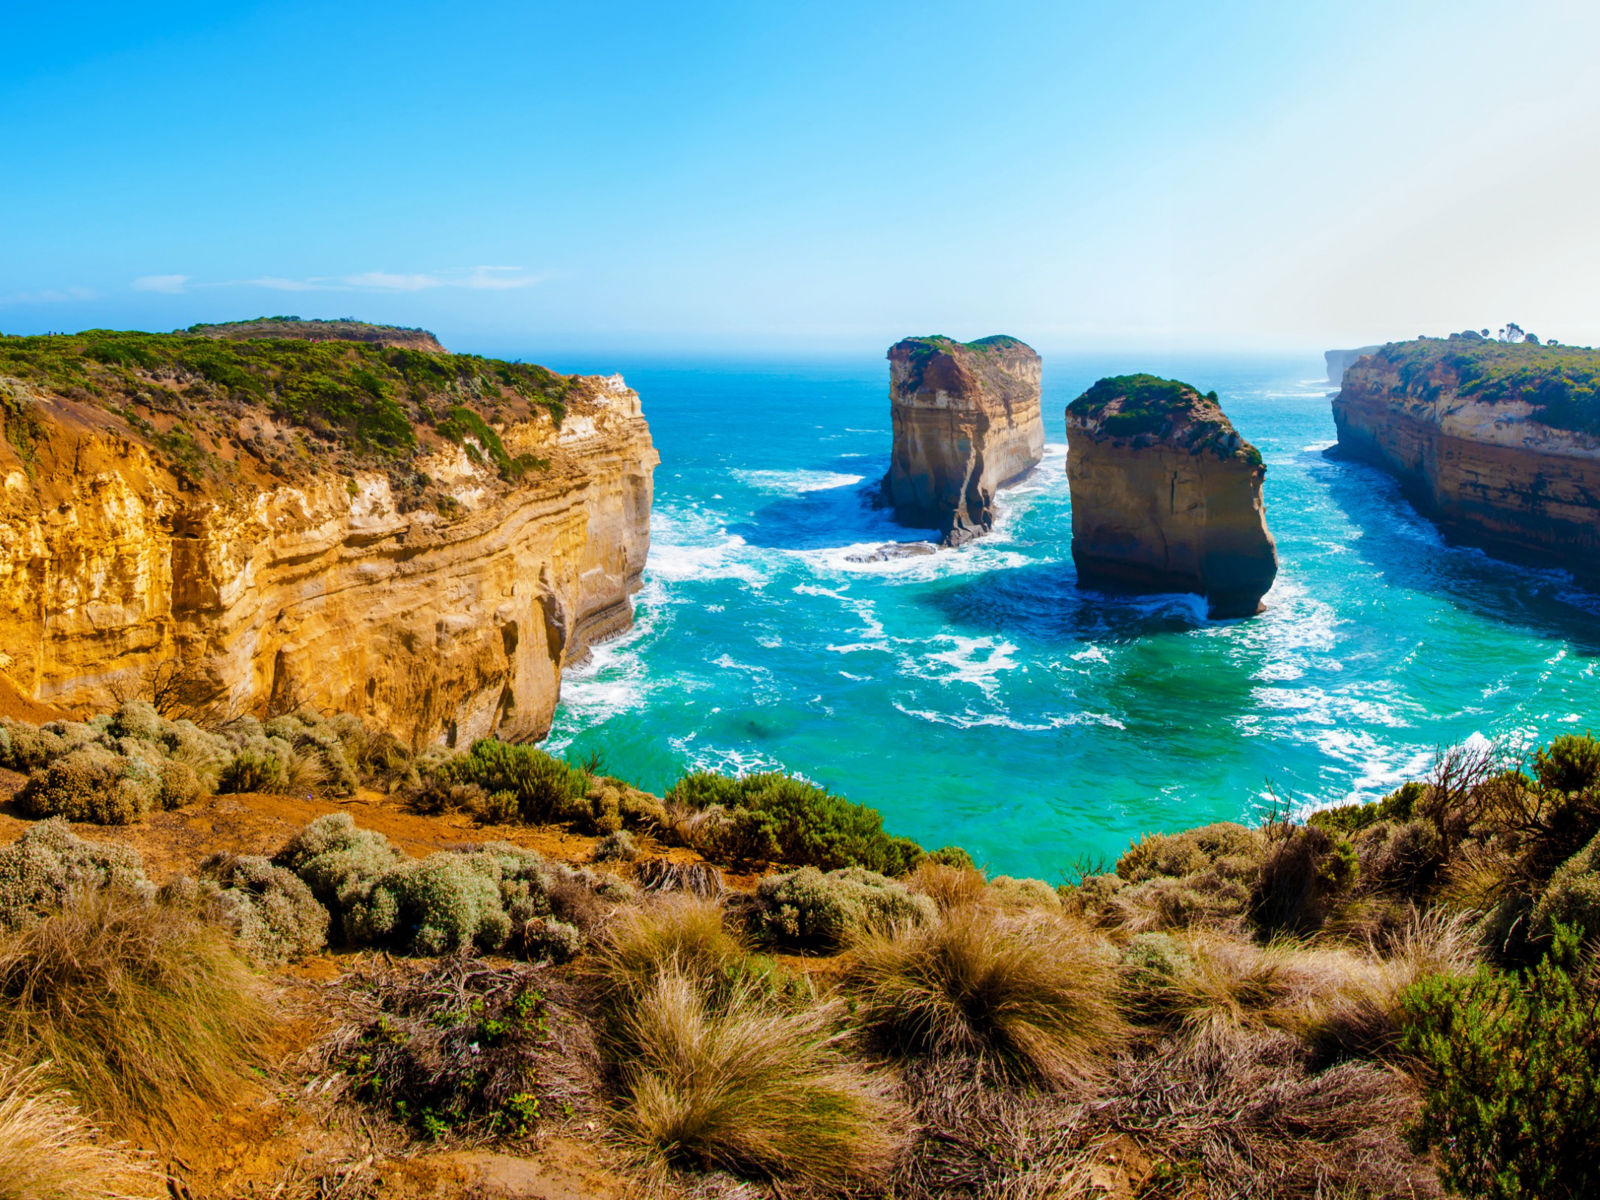 Resa till Australien - Panoramautsikt över de imponerande kalkstensklipporna och turkosblå havet längs Great Ocean Road i Australien.